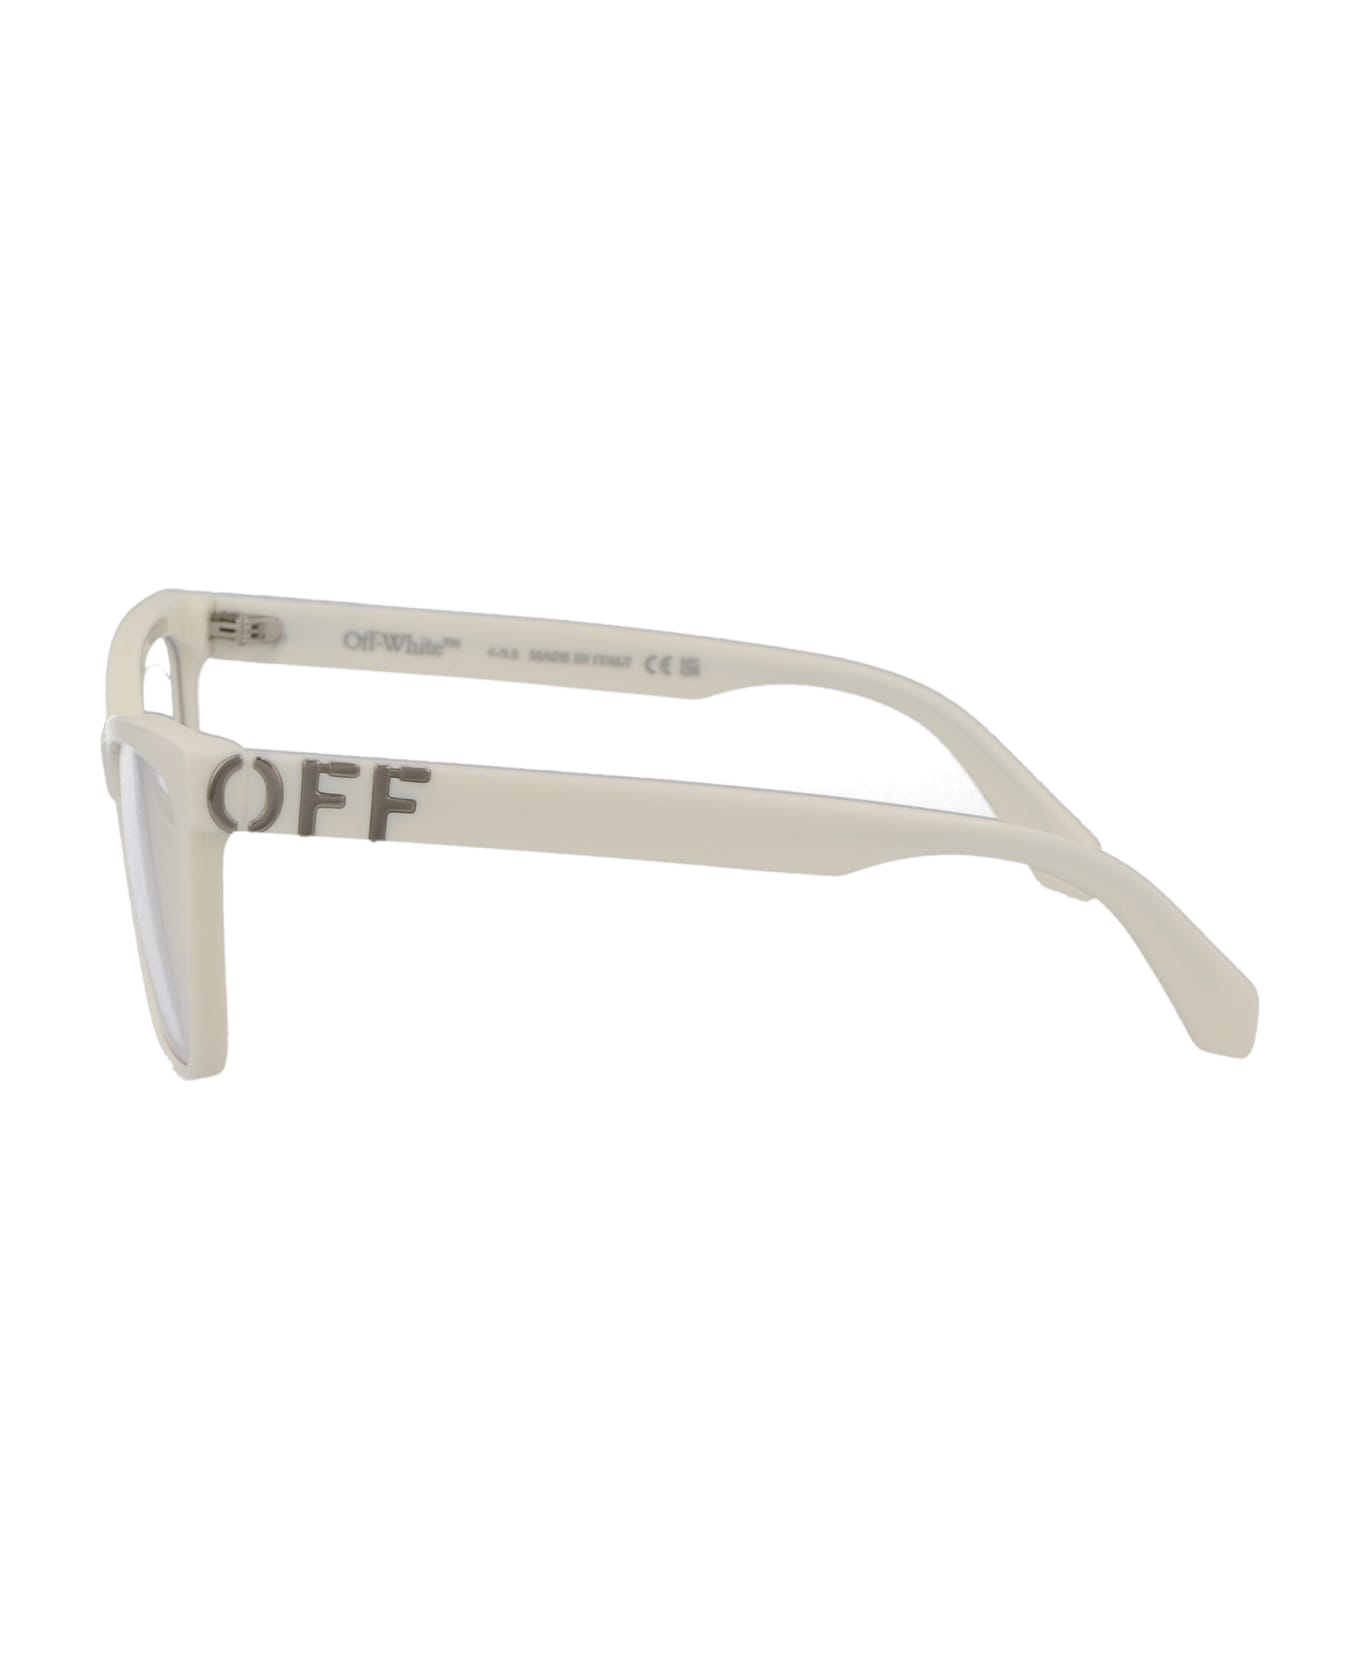 Off-White Optical Style 67 Glasses - 0100 WHITE アイウェア